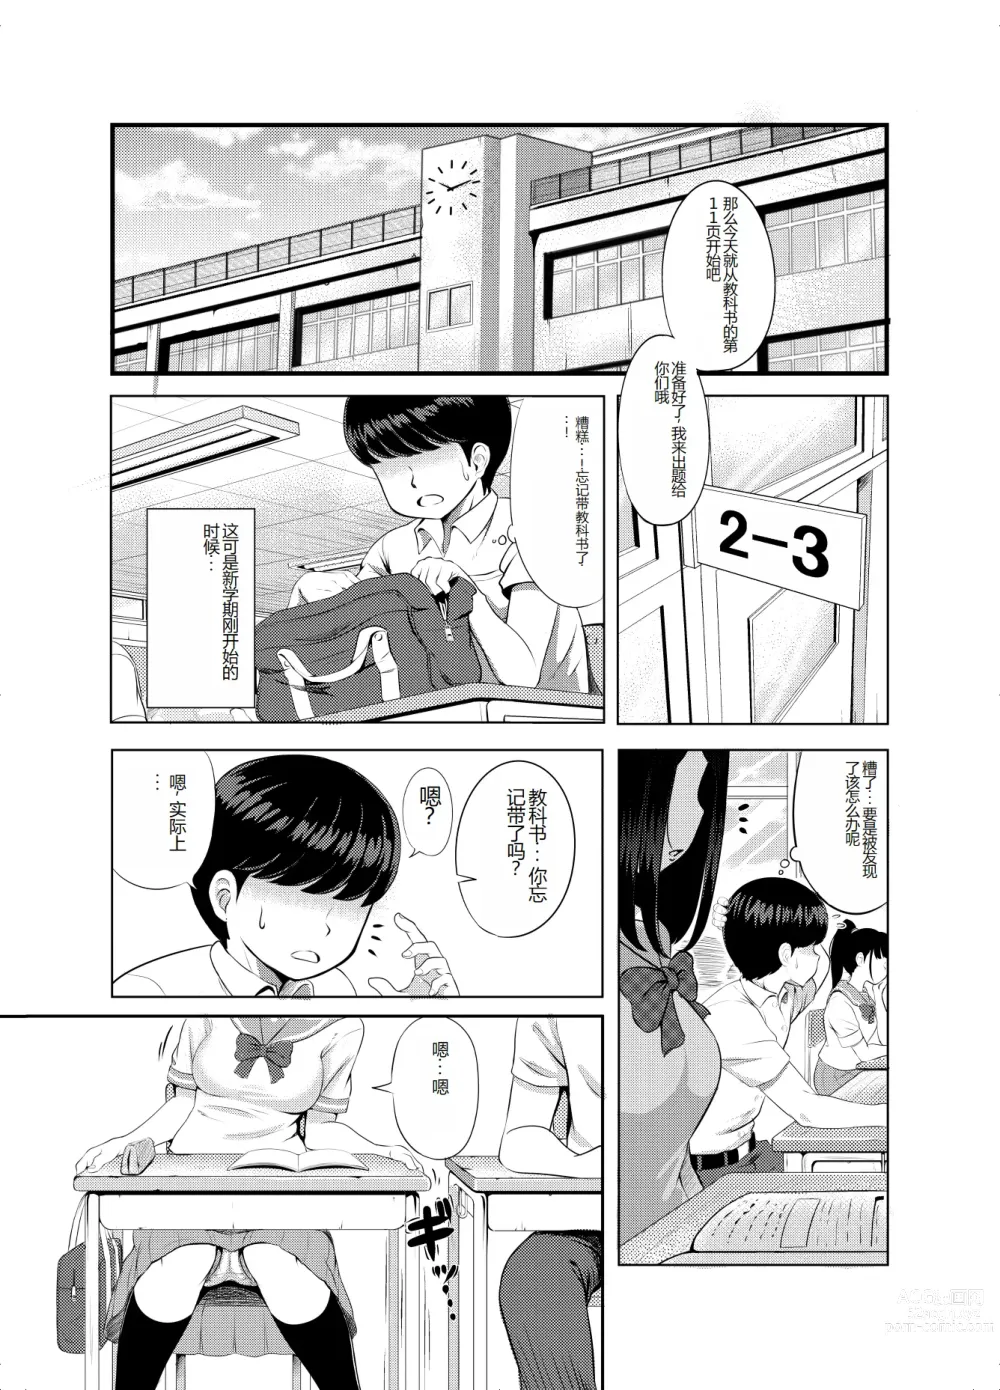 Page 3 of doujinshi 2-nen 3-kumi